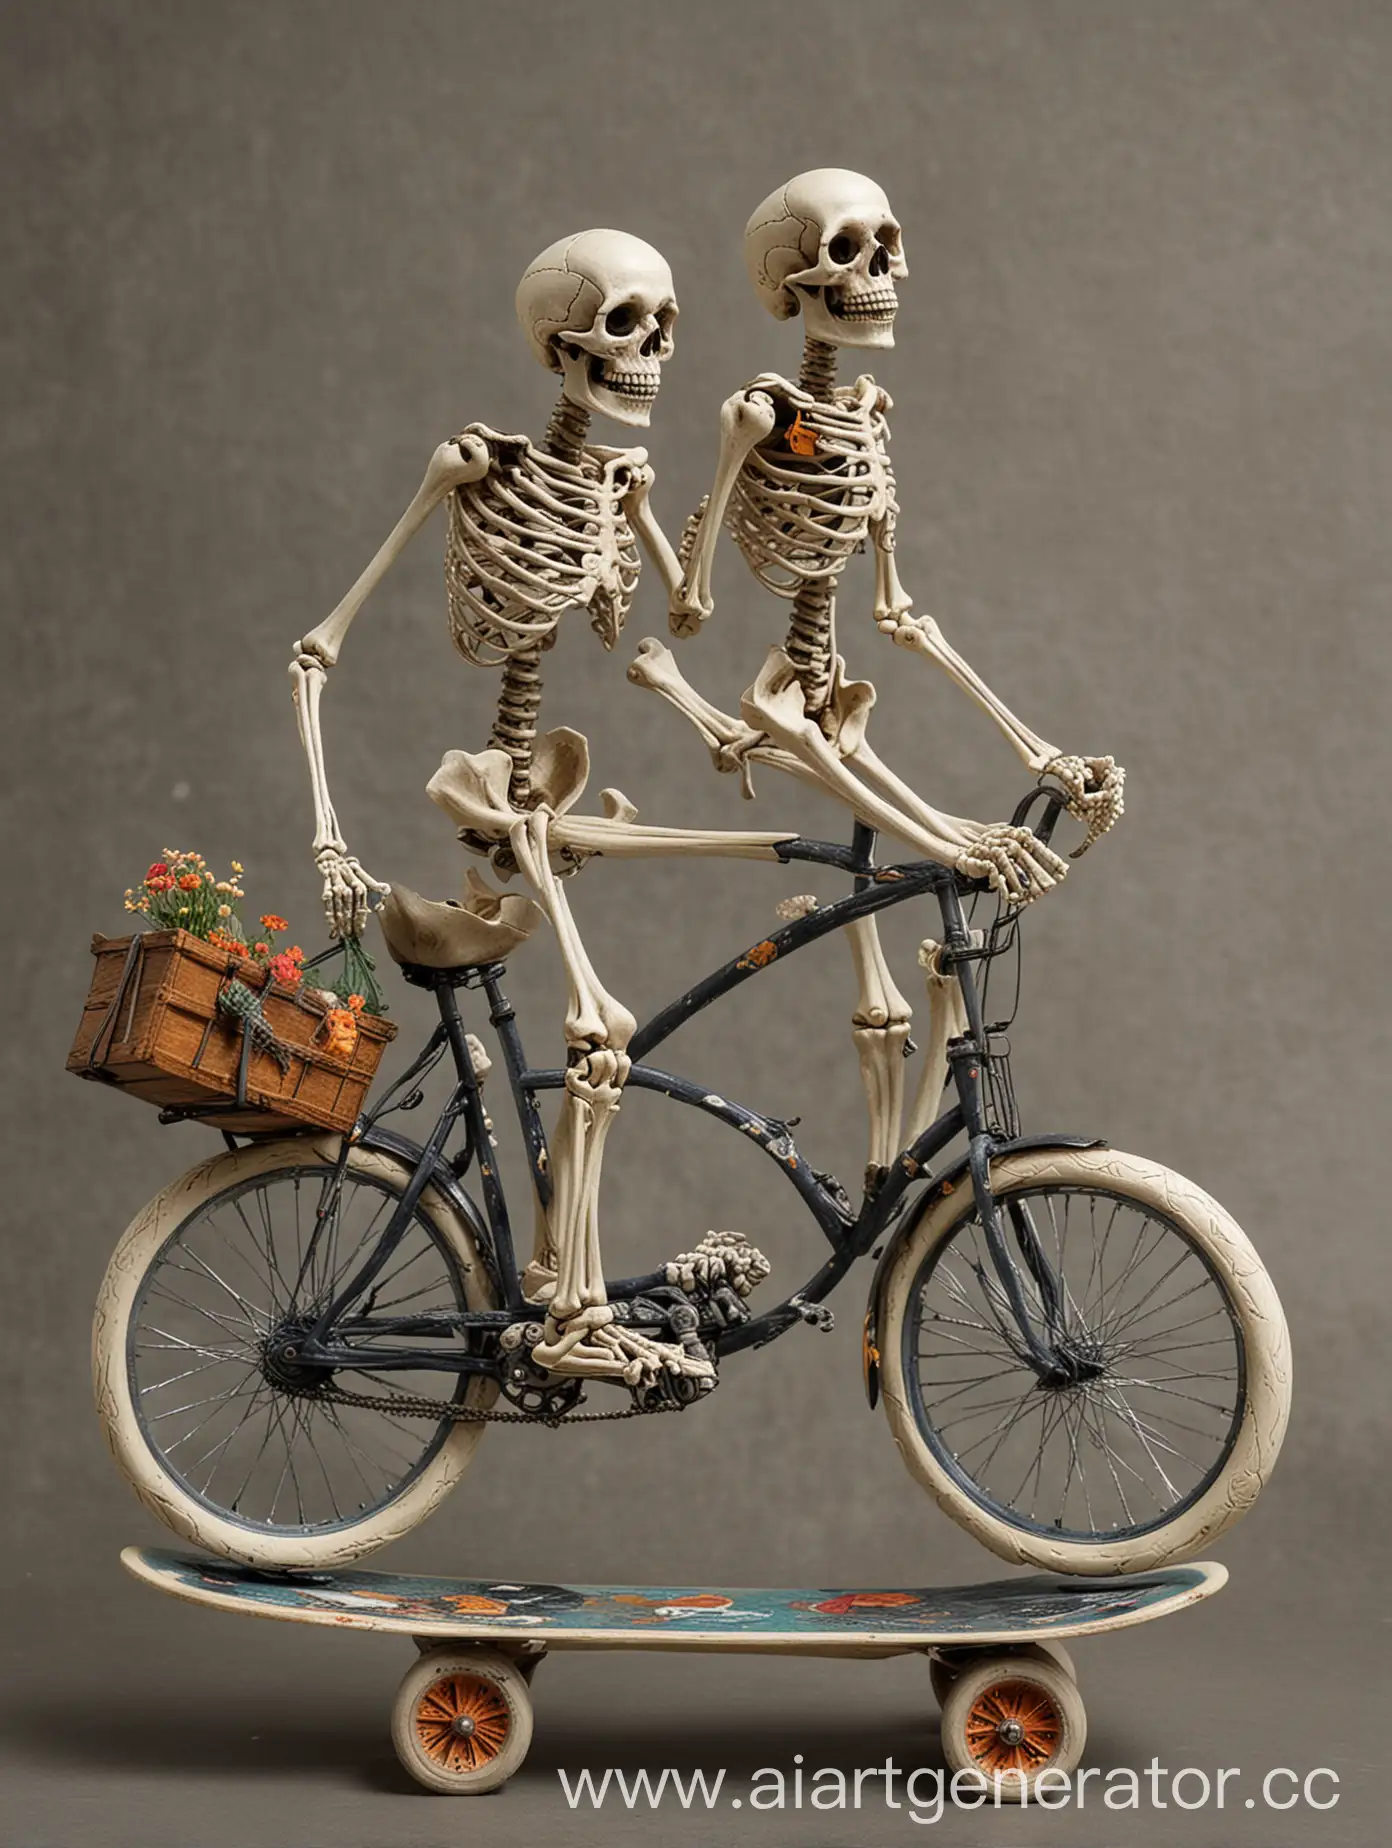 два скелета, один на велосипеде другой на скейтборде 
